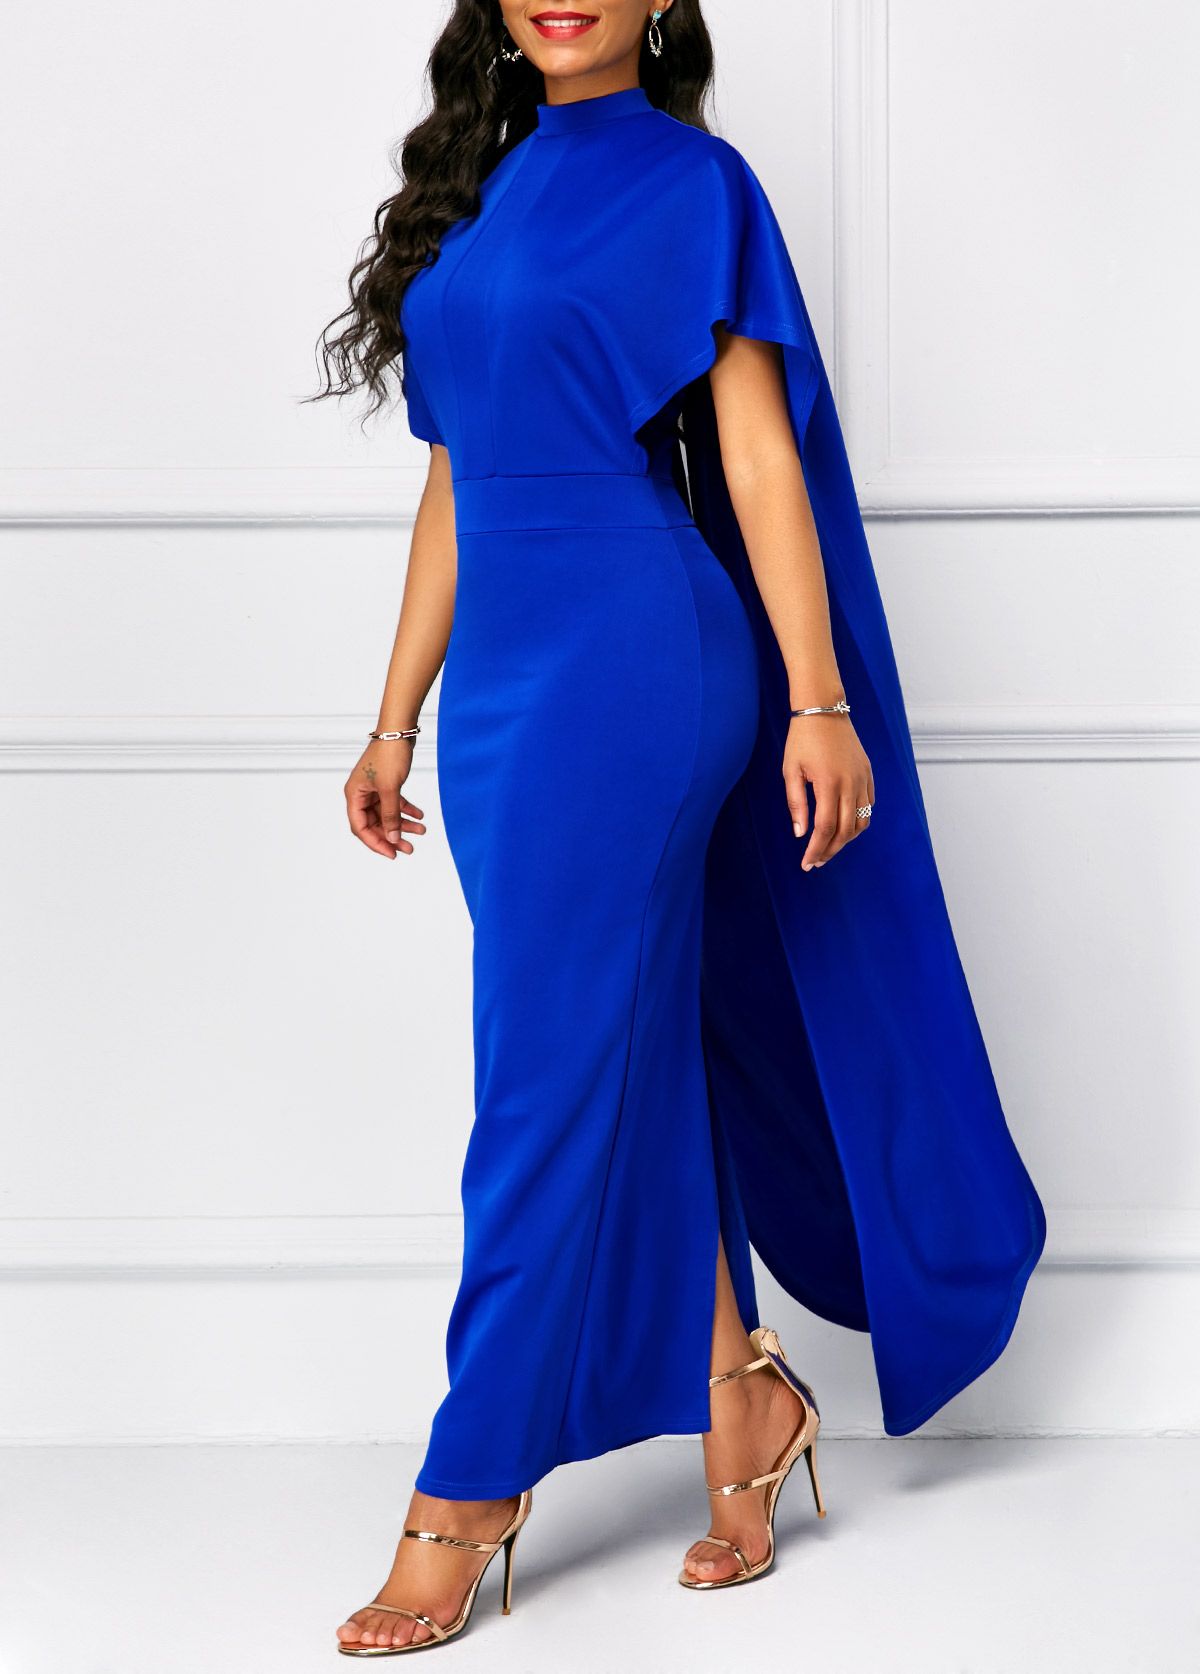 Mock Neck Short Sleeve Royal Blue Dress | Rosewe.com - USD $34.47